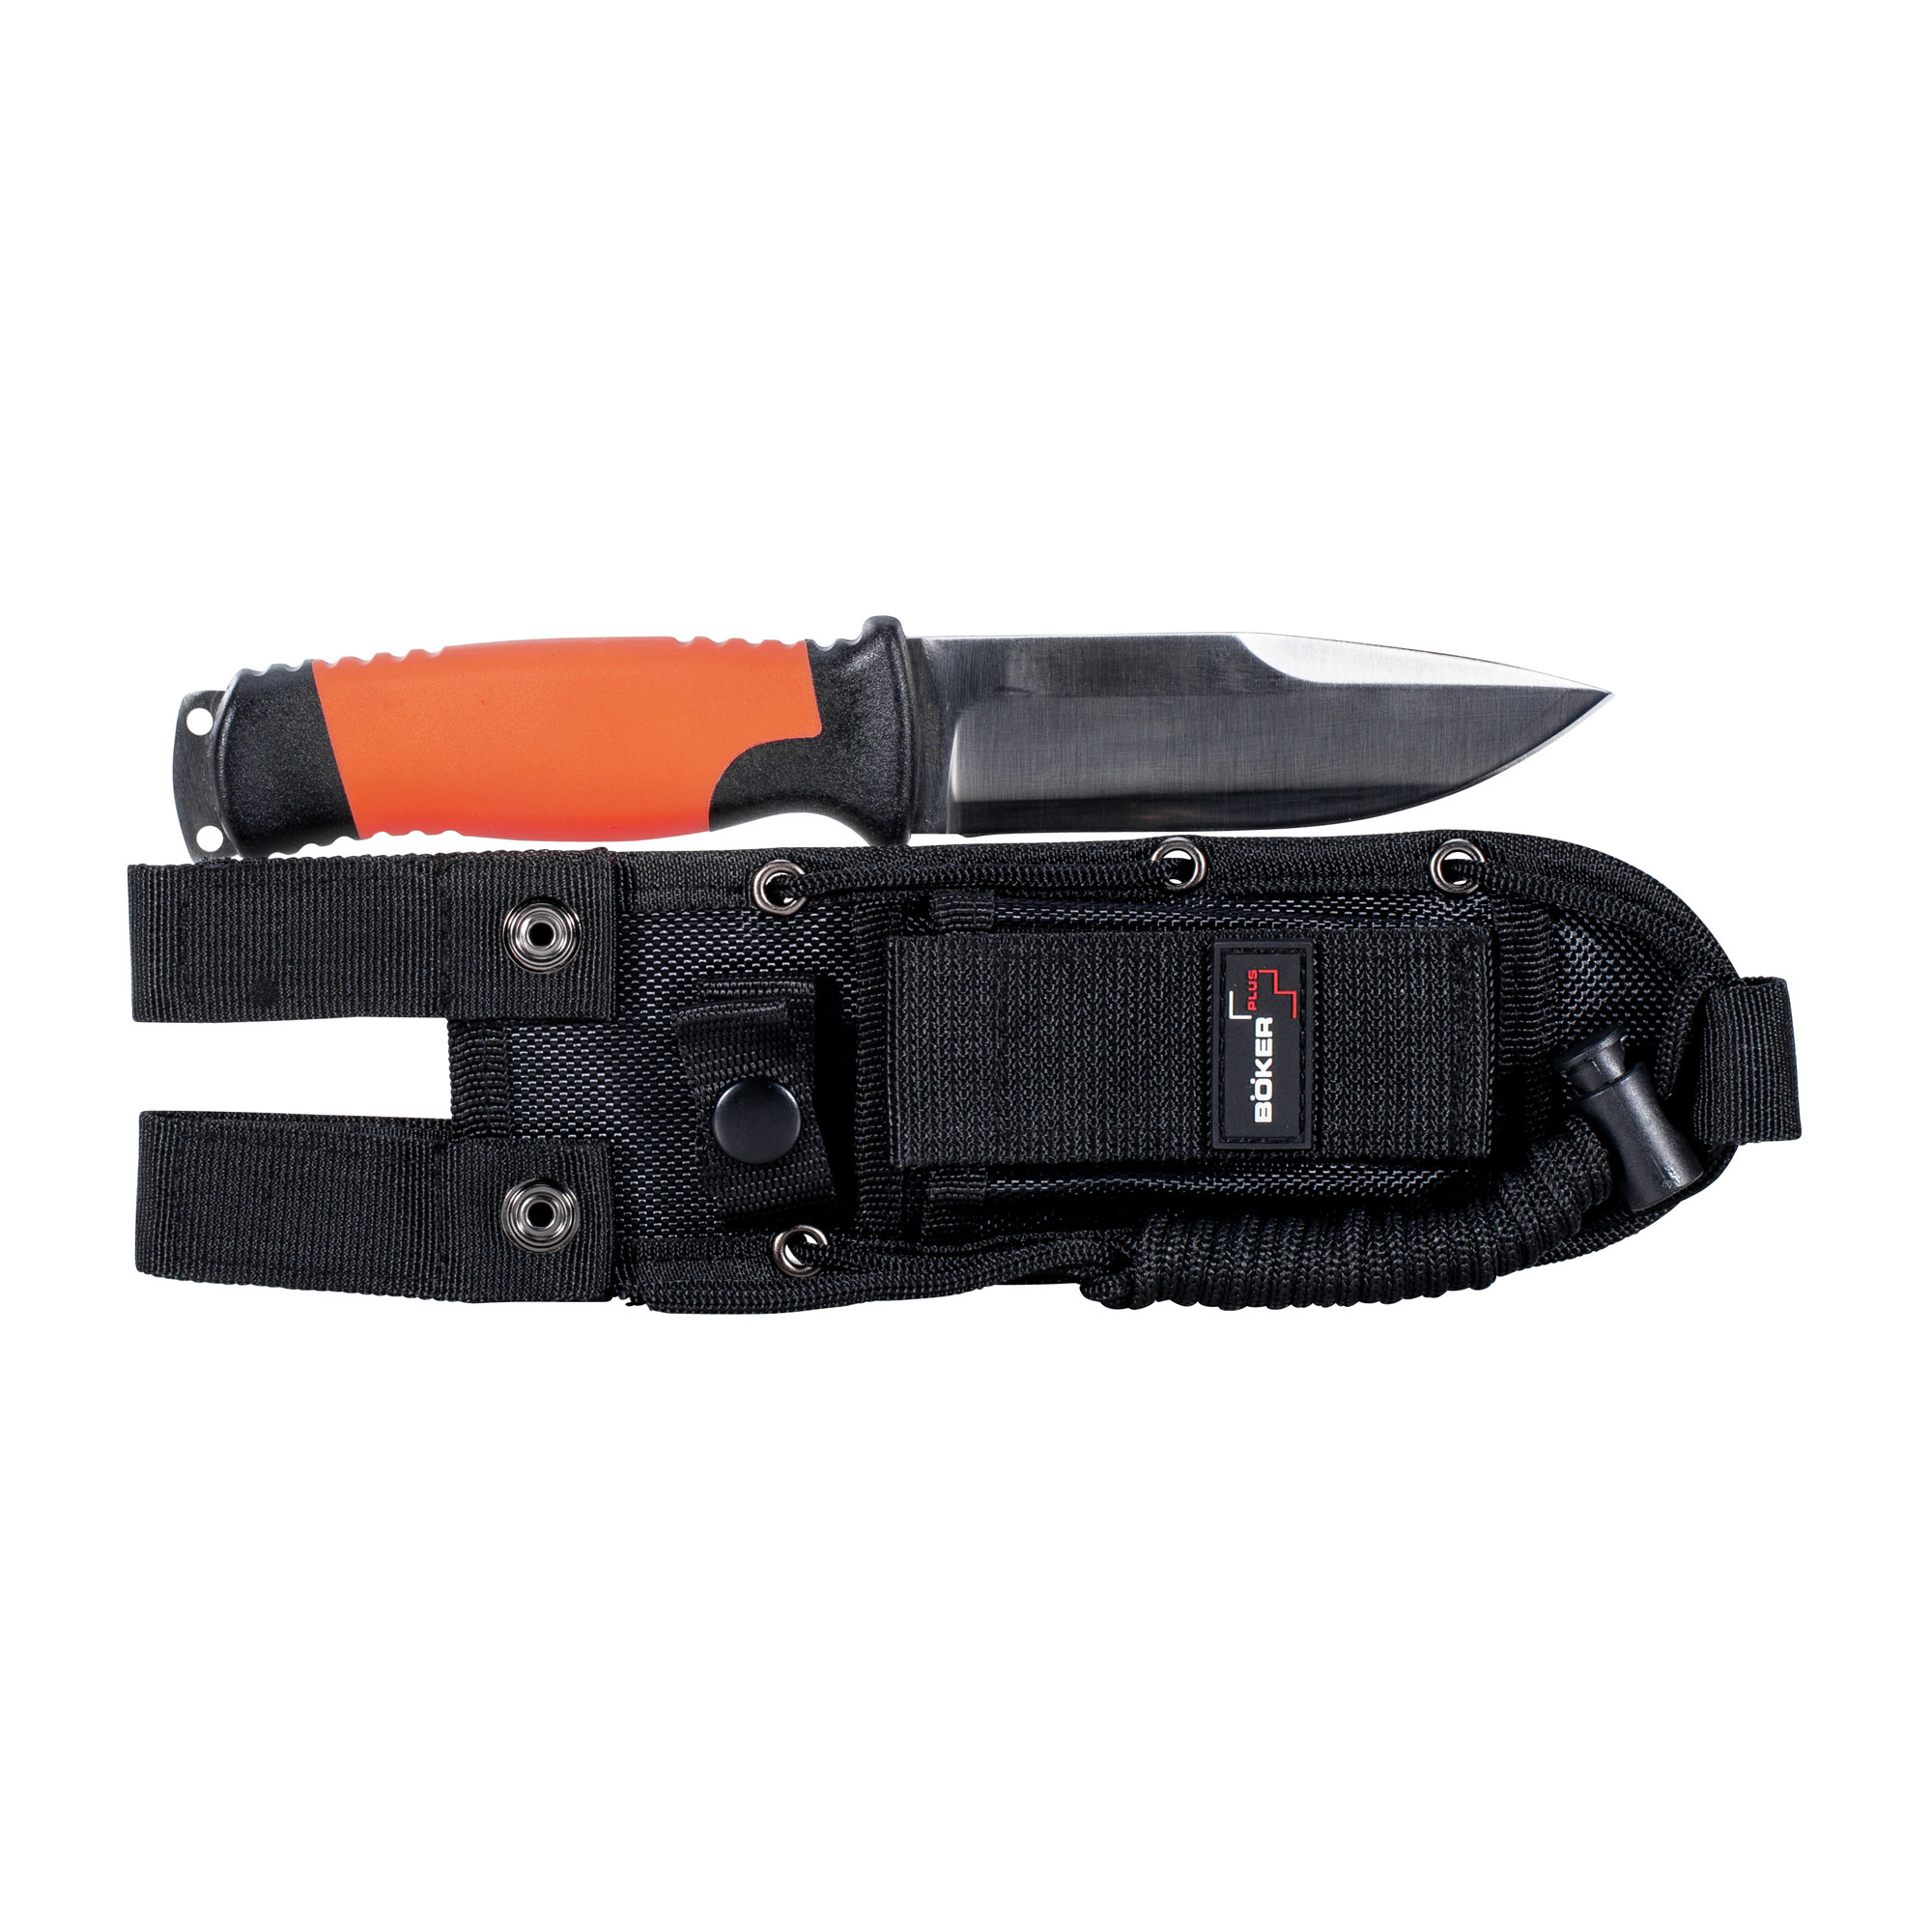 Böker Plus Knife Outdoorsman XL orange Folding Knife